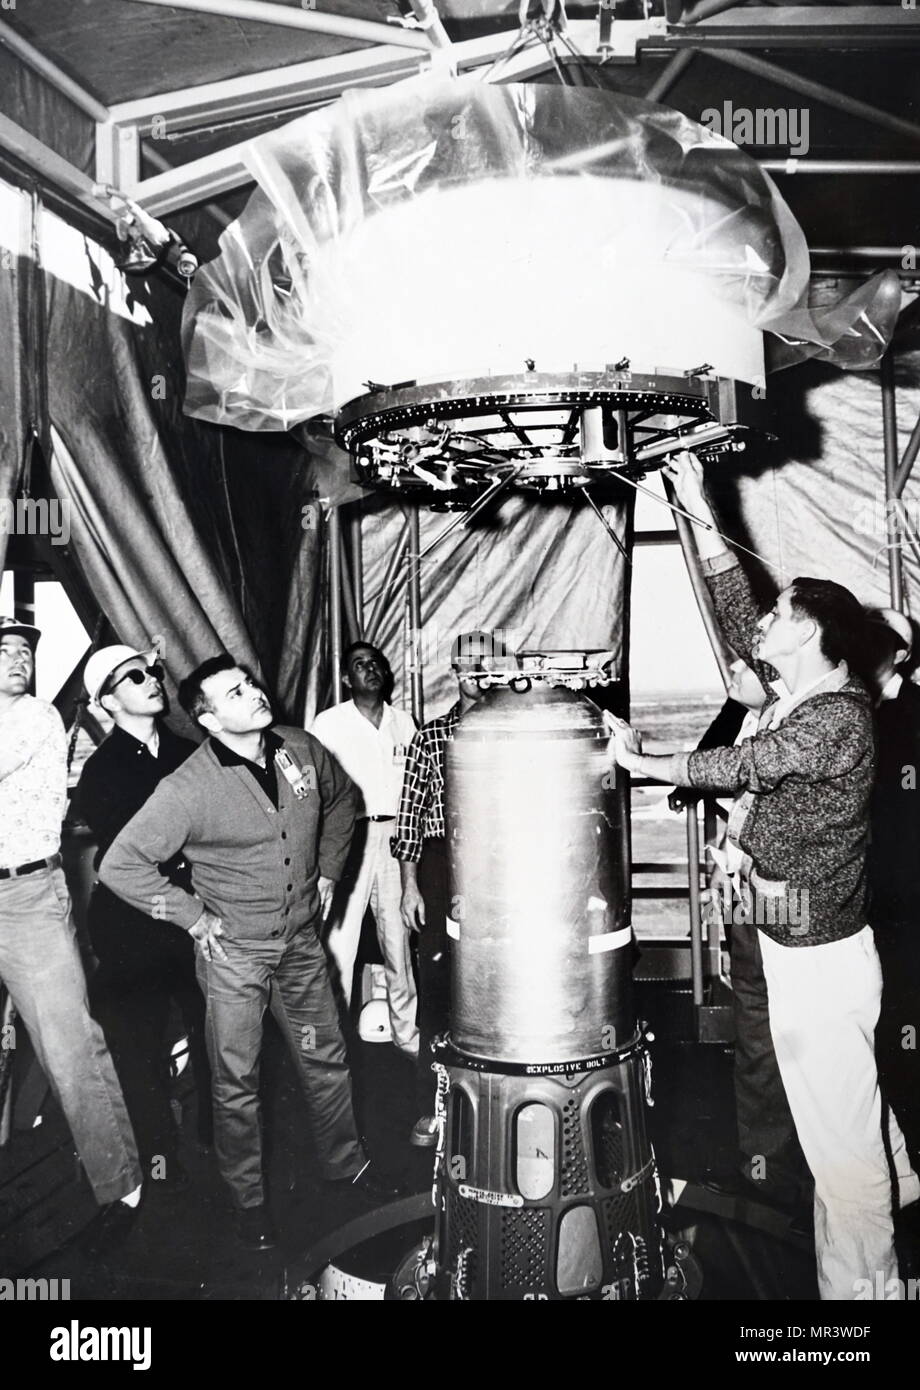 Il Thor-Delta, noto anche come delta DM-19 o semplicemente Delta è stato un inizio di American Expendable Launch system utilizzato per 12 lanci orbitali nei primi anni sessanta. Un derivato del Thor-Able, era un membro della famiglia di Thor di razzi e il primo membro della famiglia Delta. Foto Stock